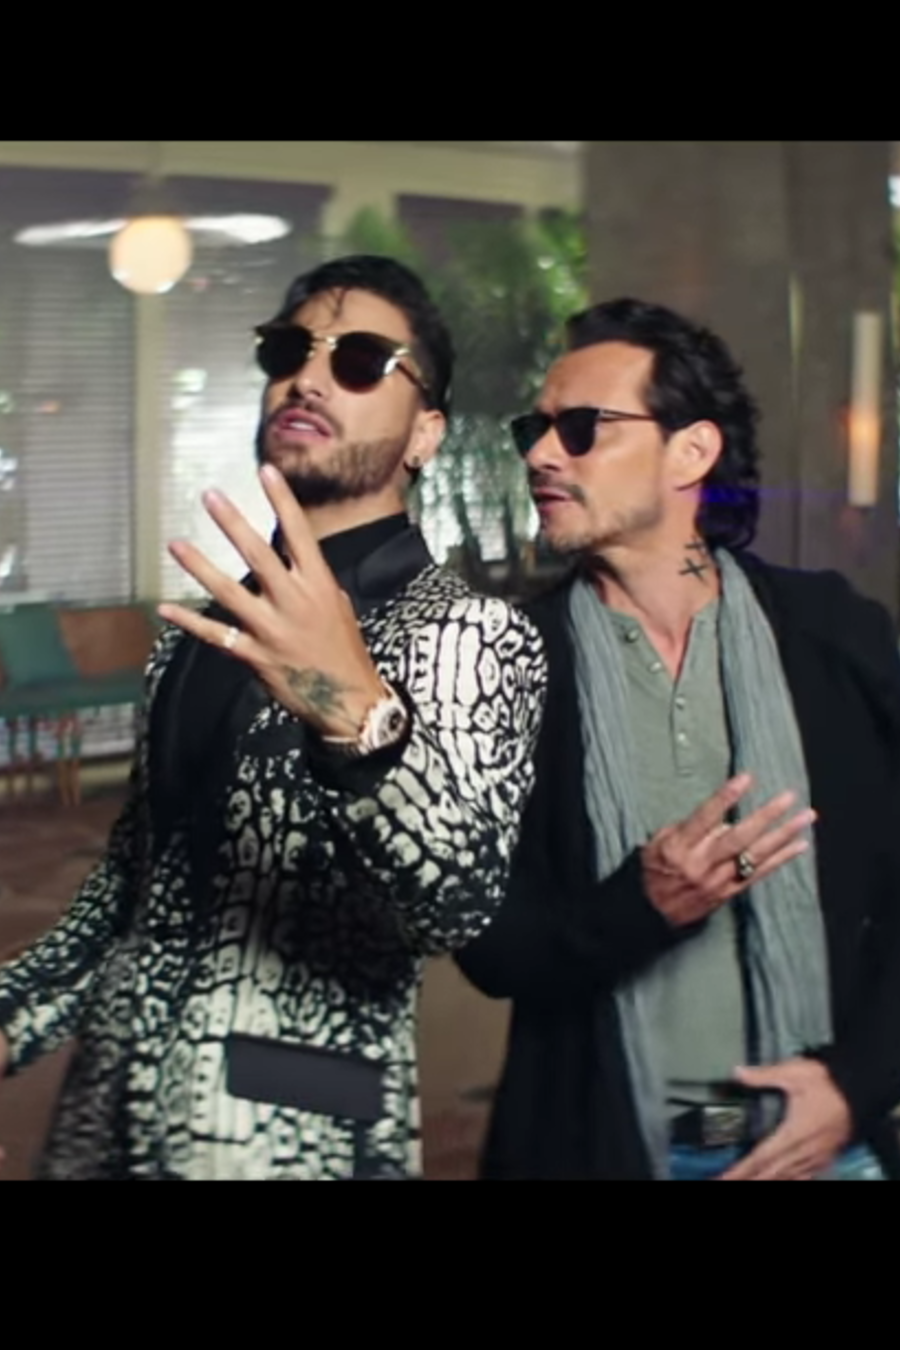 Maluma y Marc Anthony lanzan video "Felices los 4" versión salsa.